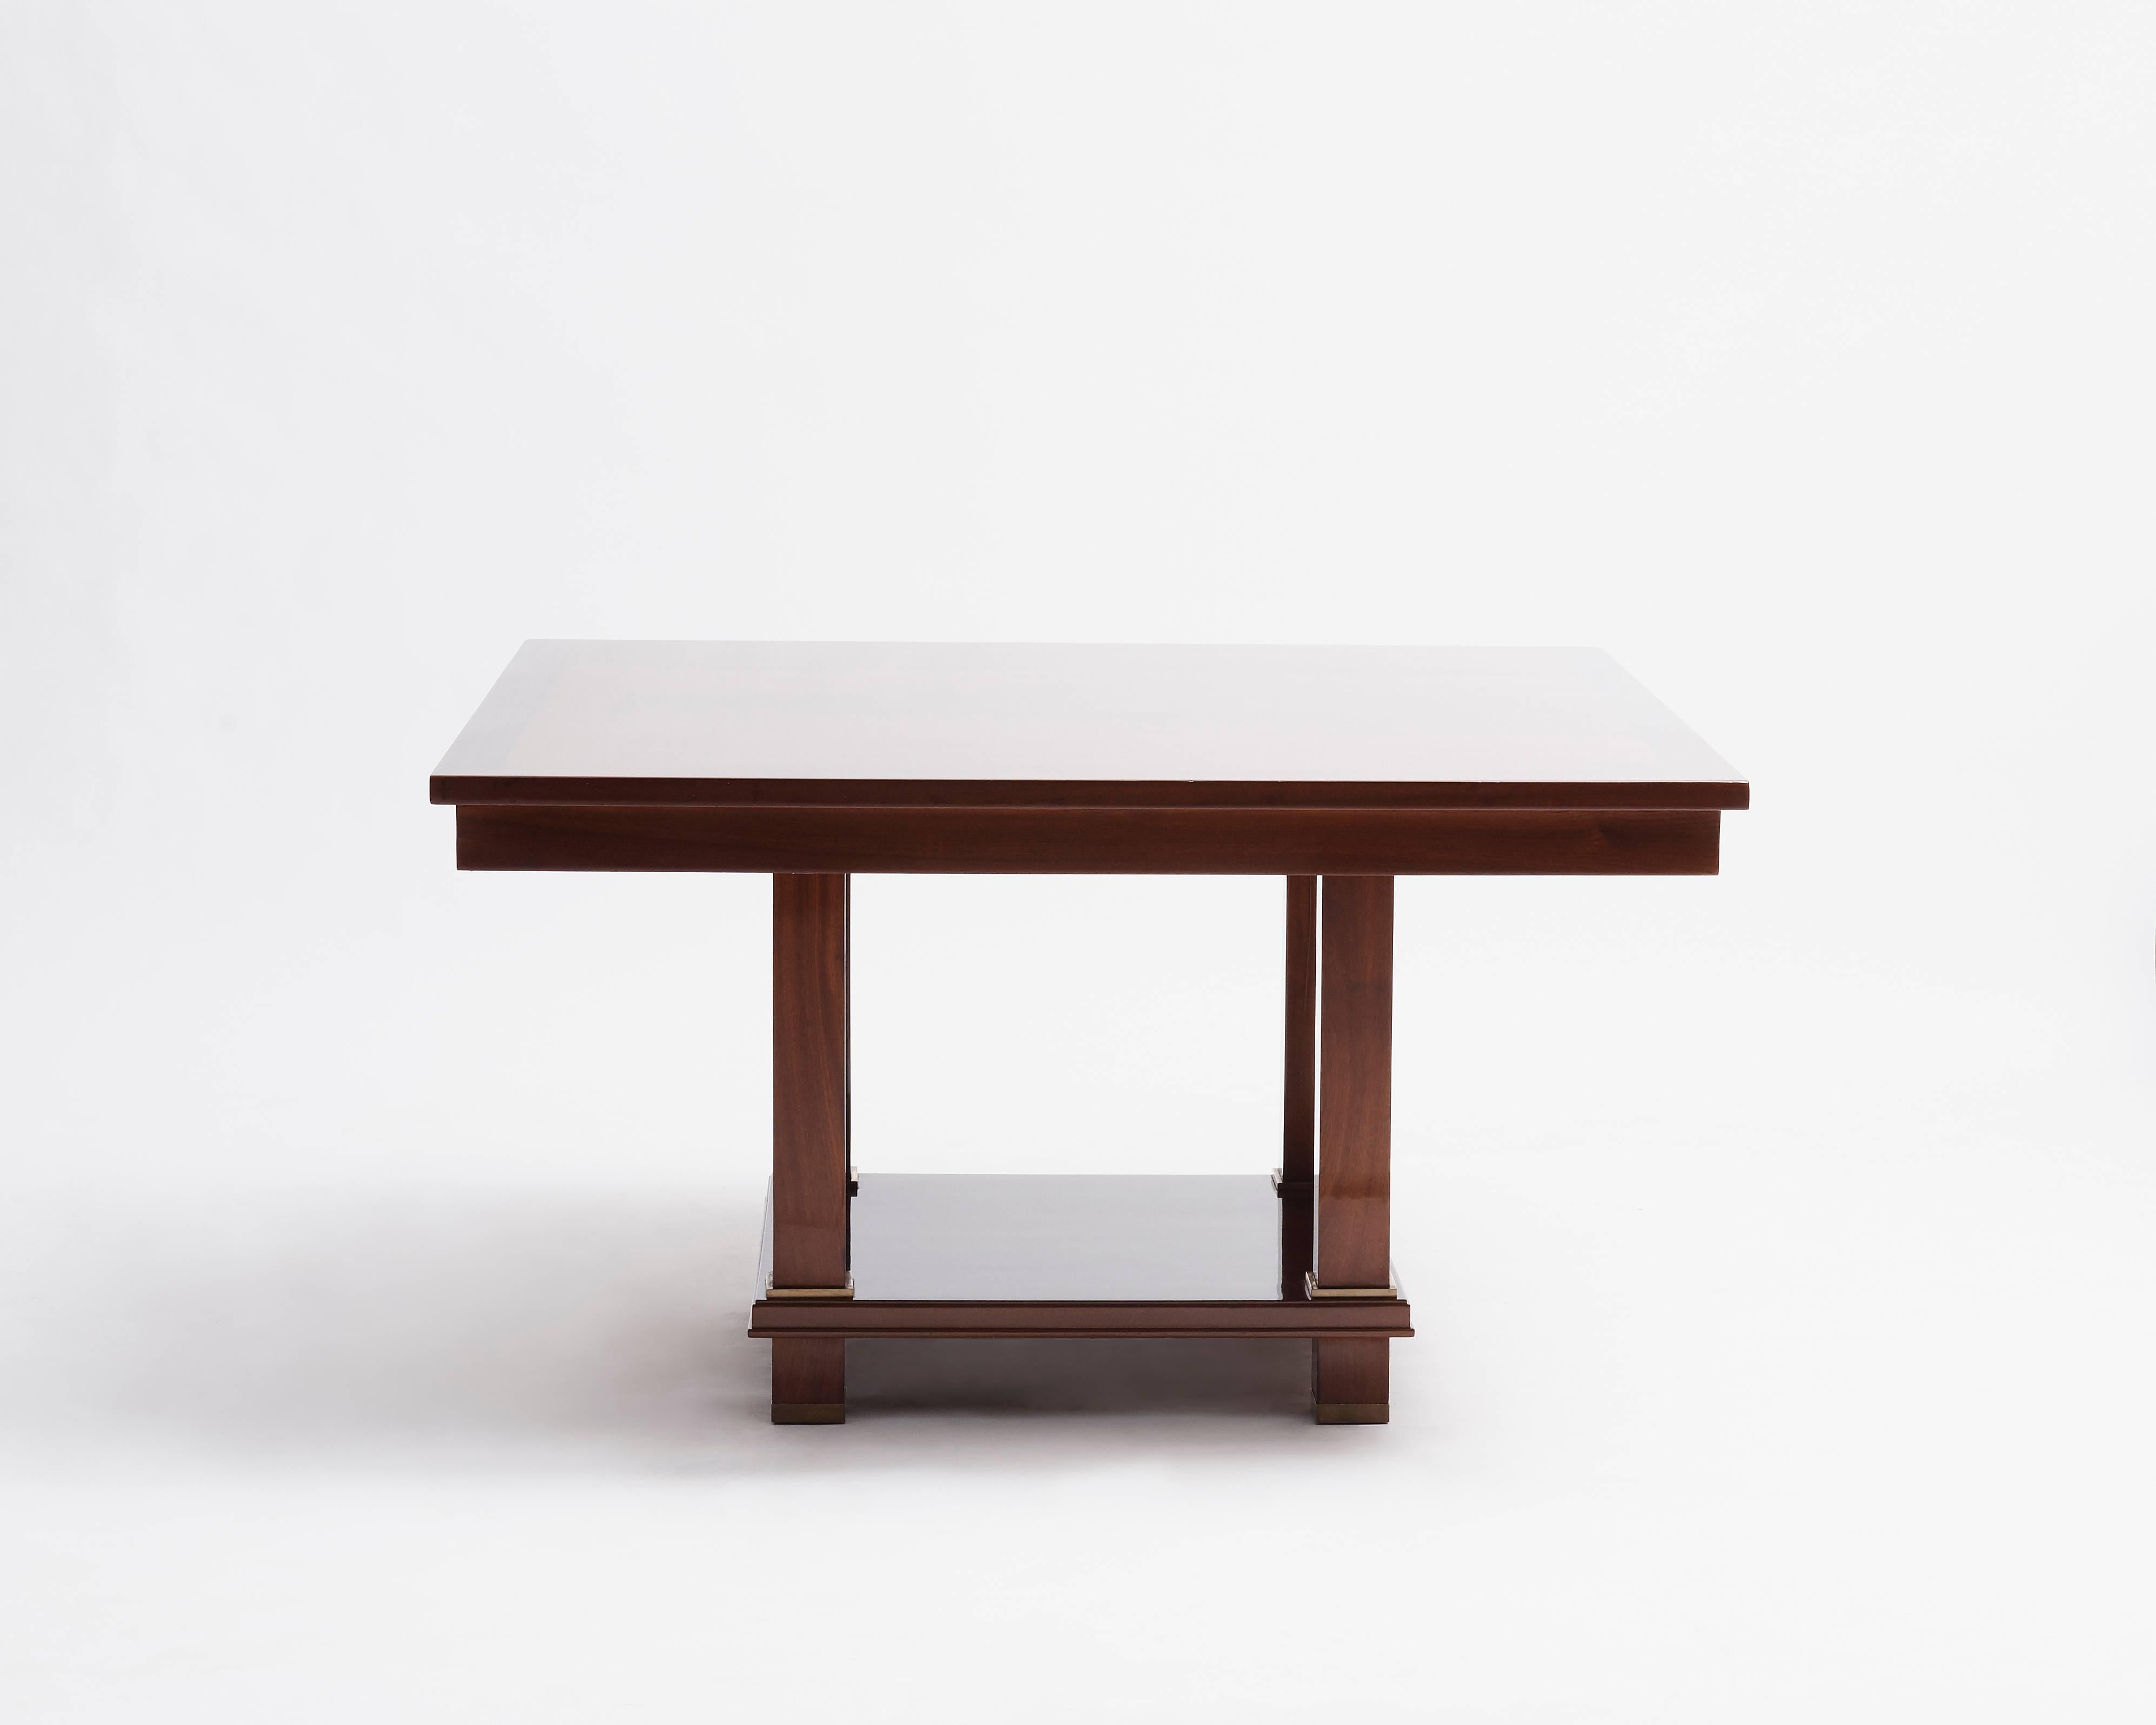 Dieser Tisch war Teil eines Projekts, das Jacques Adnet zusammen mit seinem Designerkollegen André Arbus im Jahr 1955 für die Umgestaltung des Palais des Consuls de Rouen durchführte.